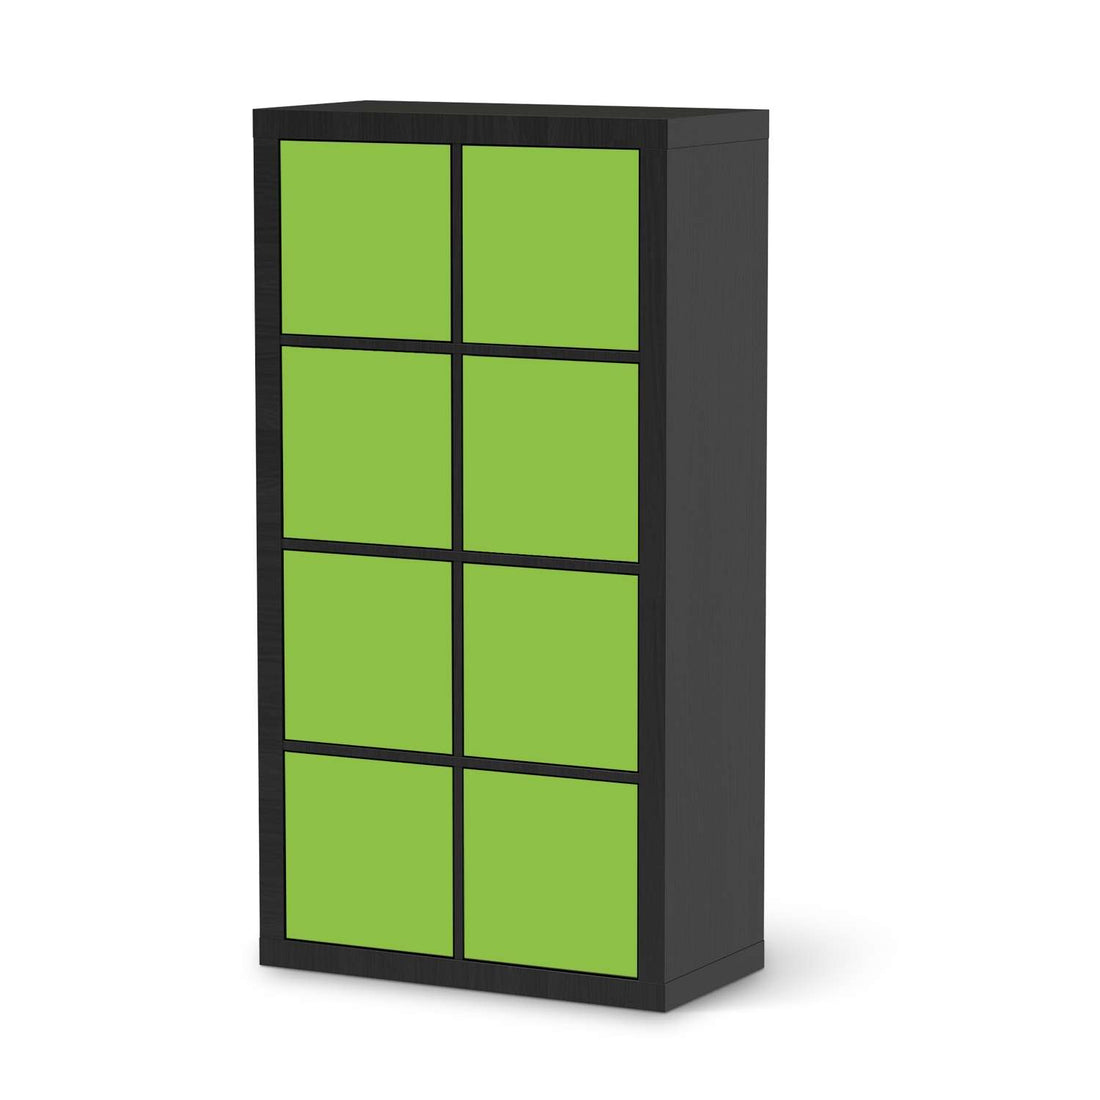 Folie für Möbel Hellgrün Dark - IKEA Kallax Regal 8 Türen - schwarz